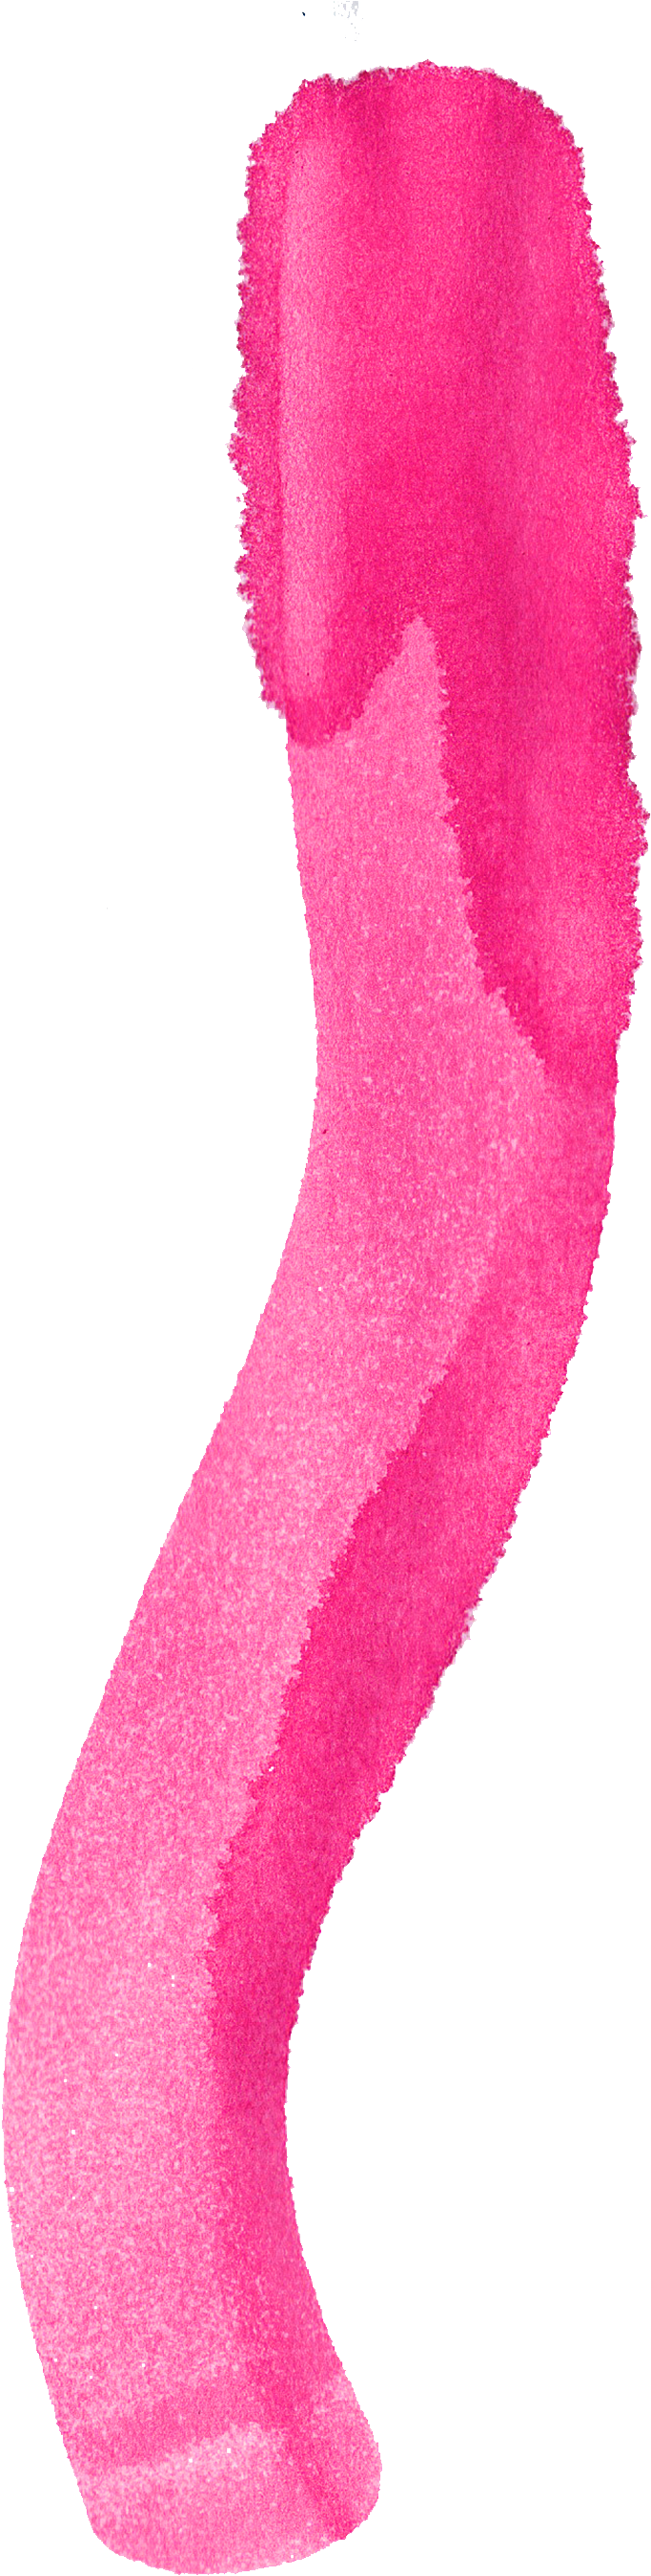 Pink Watercolor Brush Stroke PNG